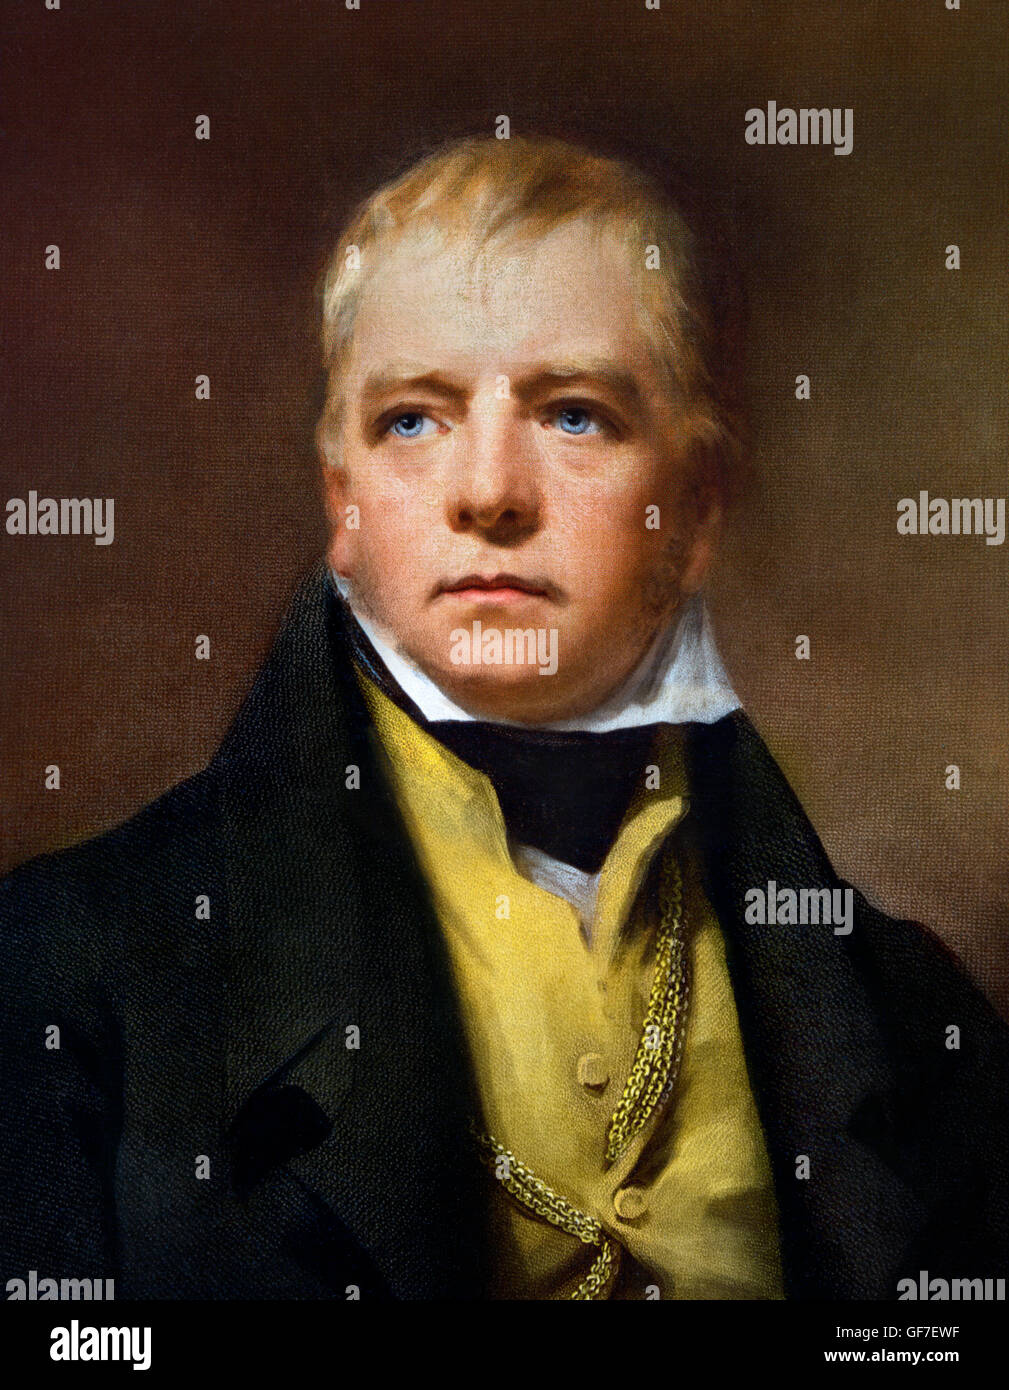 Sir Walter Scott. Porträt des schottischen Schriftstellers Walter Scott (1771 – 1832). Reproduktion nach einem Porträt von Henry Raeburn, 1822. Stockfoto